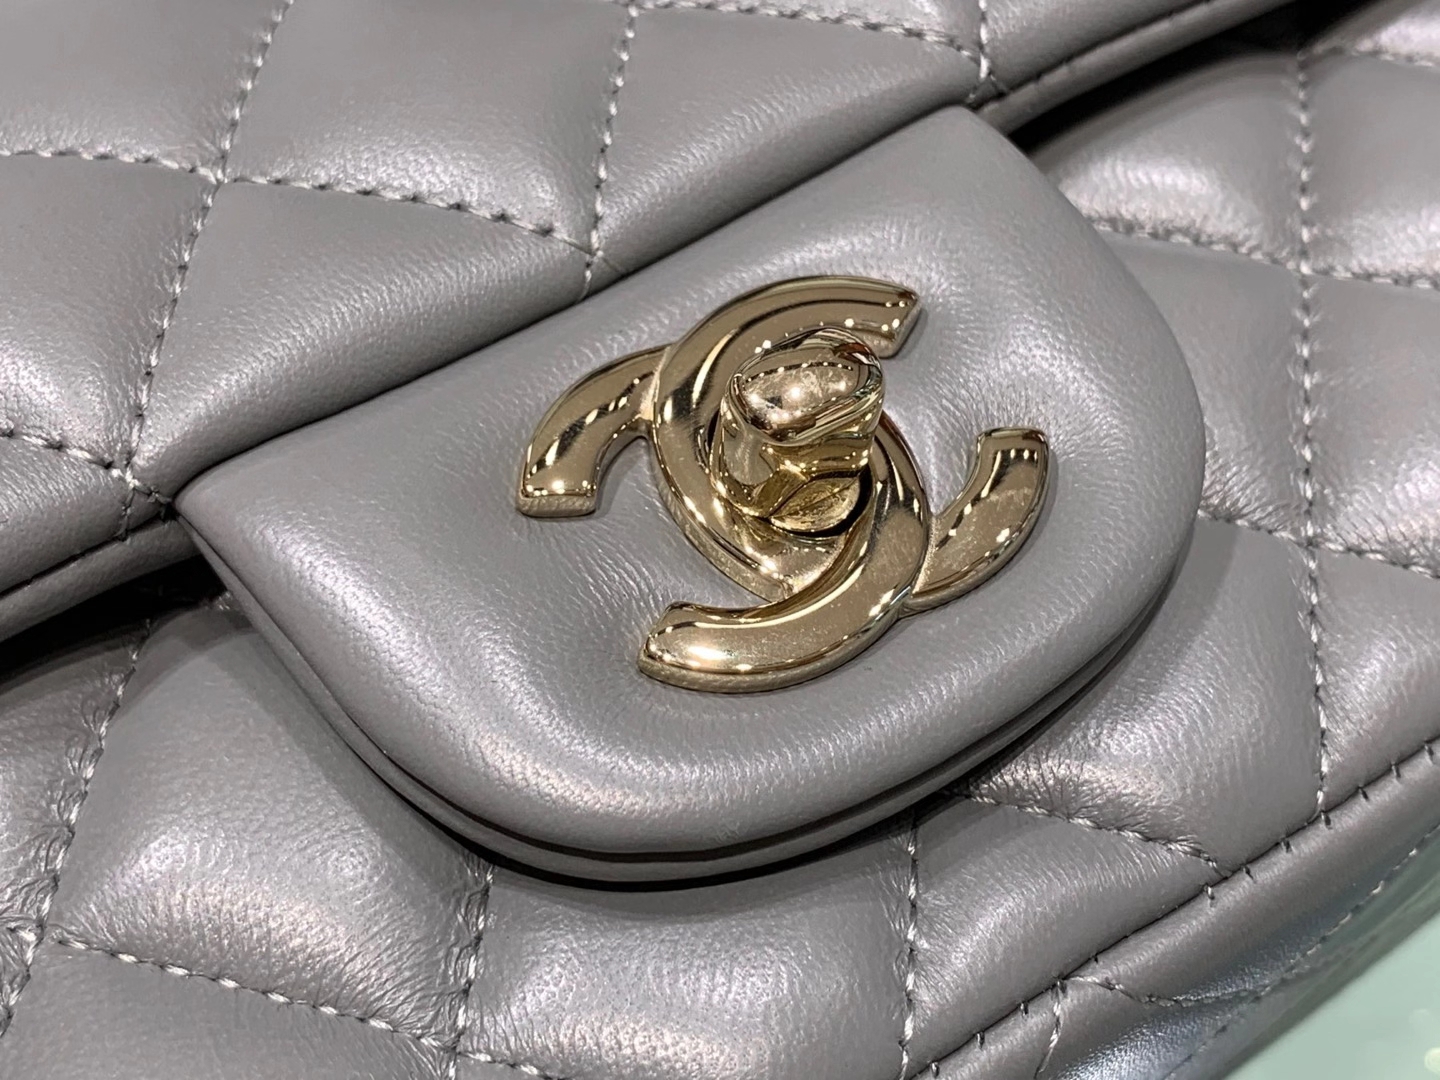 Chanel（香奈儿）cf 链条包 mini 巴黎灰 金扣 金链 20cm